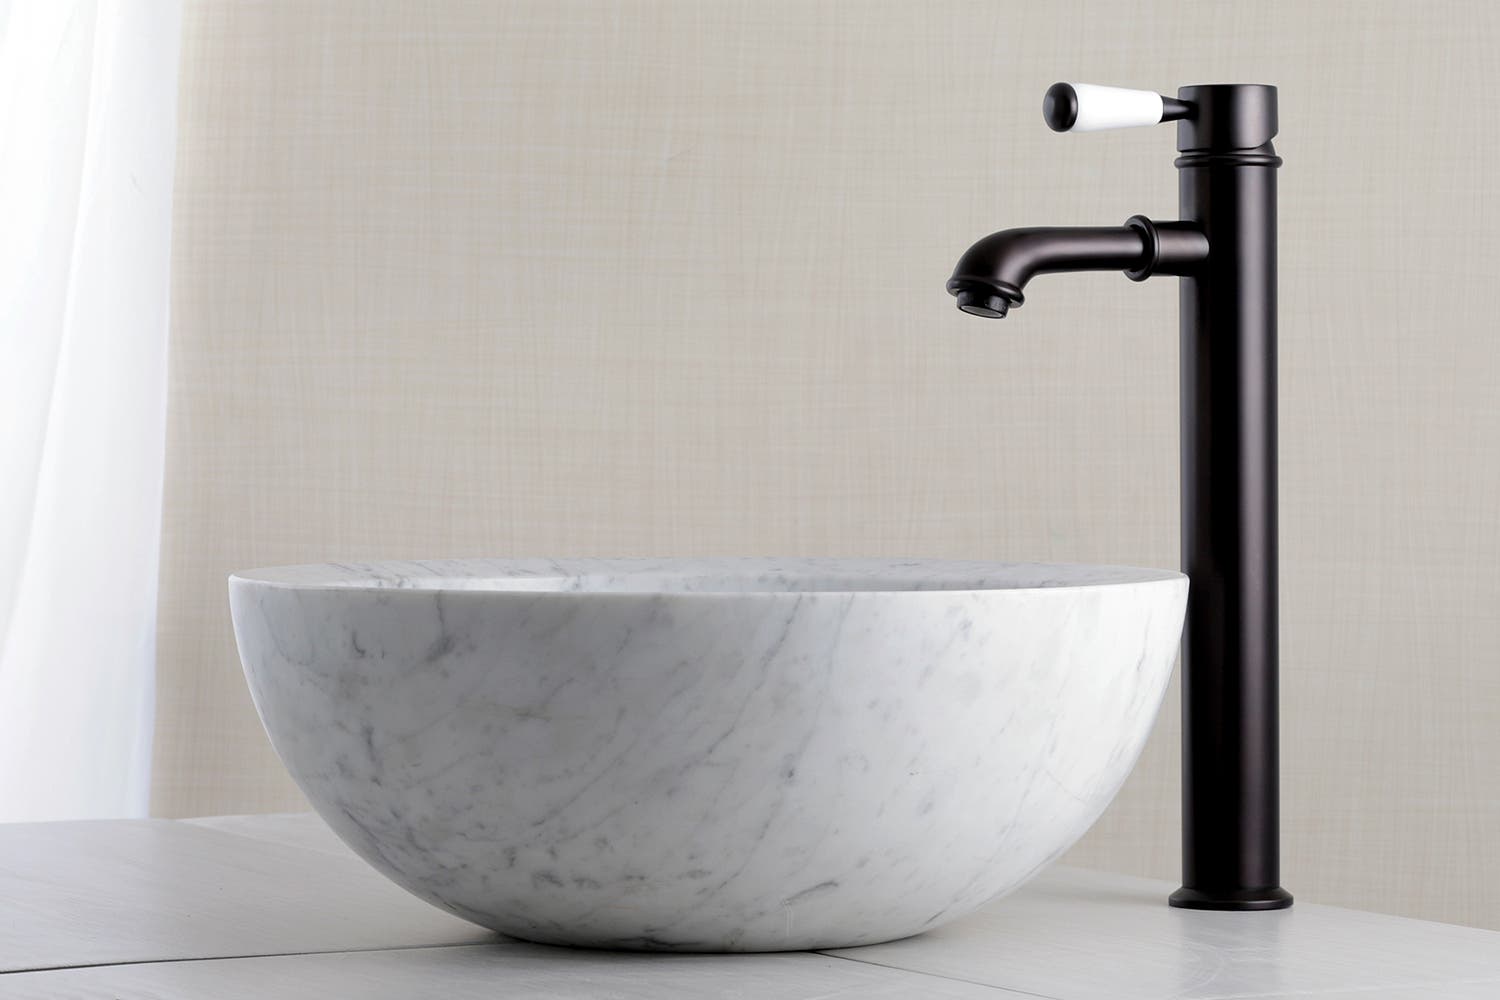 The Paris Vessel Sink Faucet Flaunts Traditional European Elegance, KS7215DPL